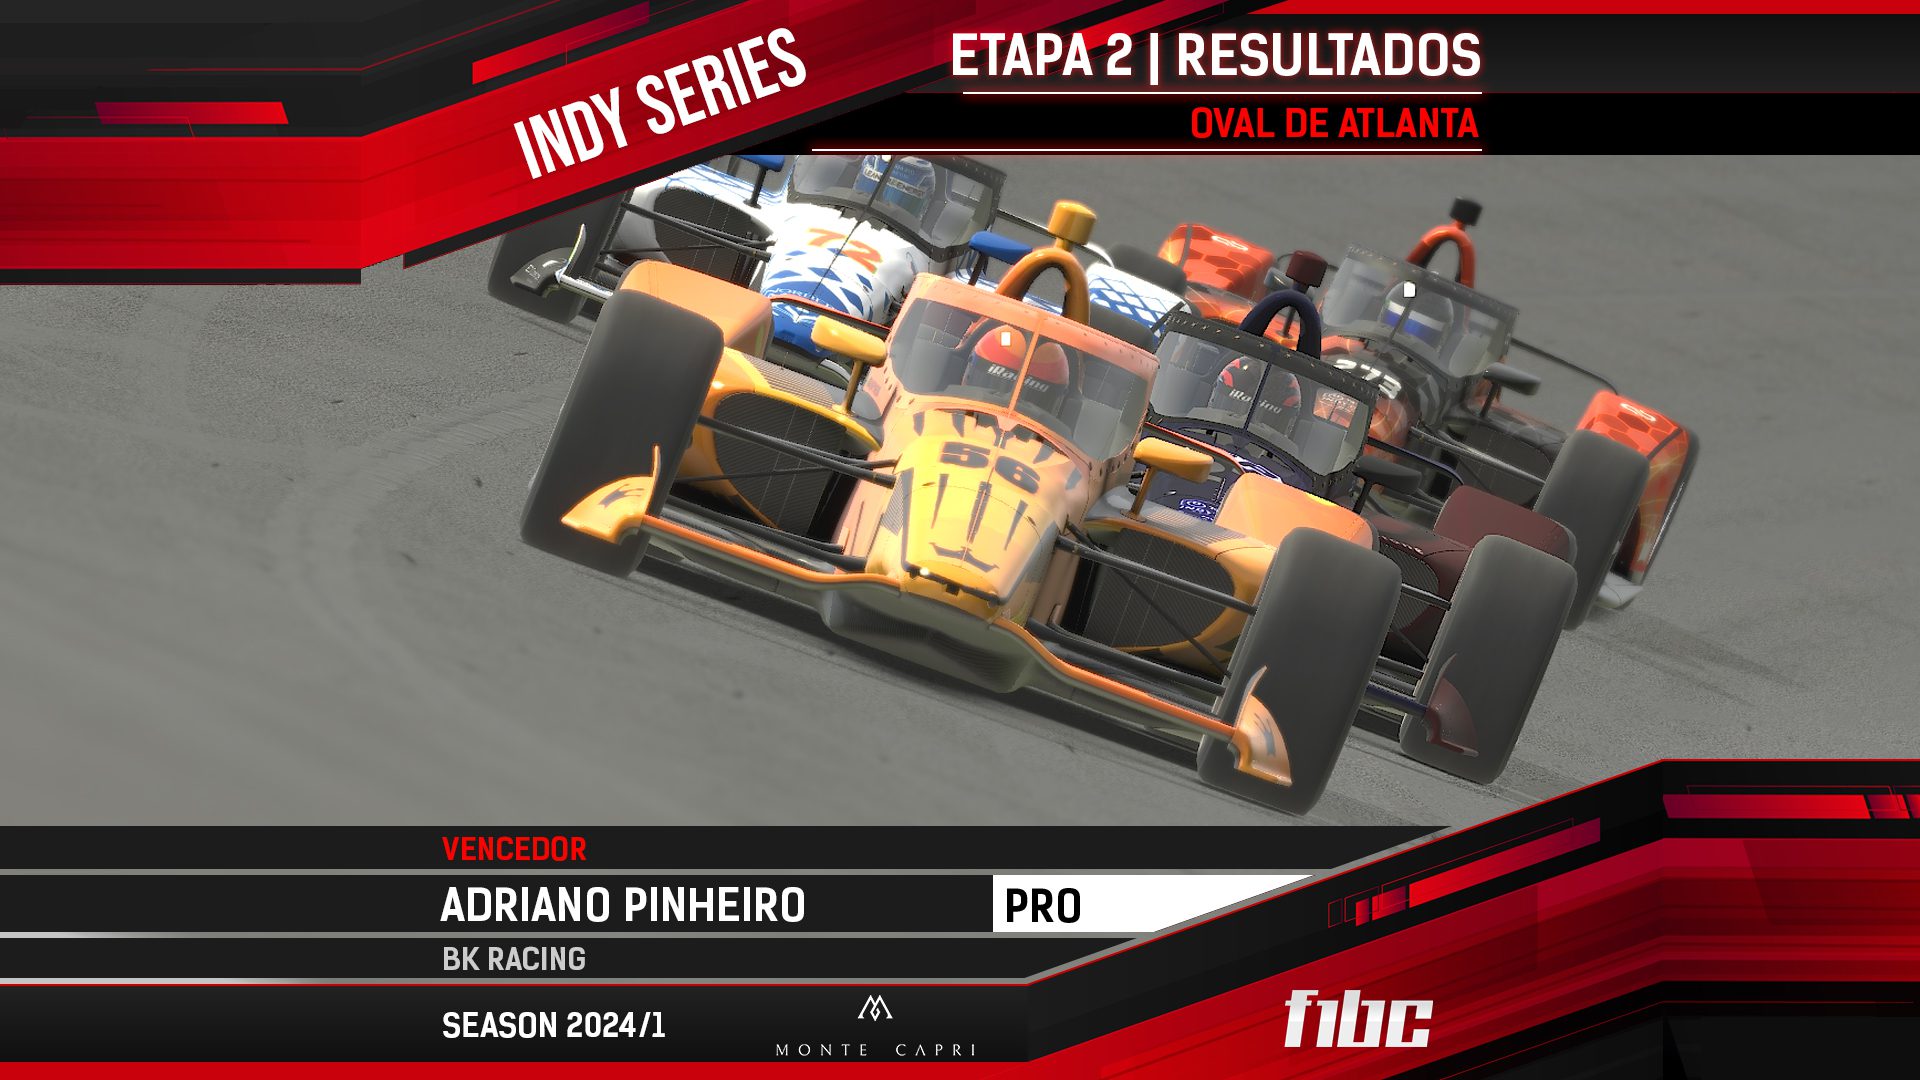 Monte Capri Indy Series: Atlanta tem novo triunfo de Adriano Pinheiro (BK Racing)